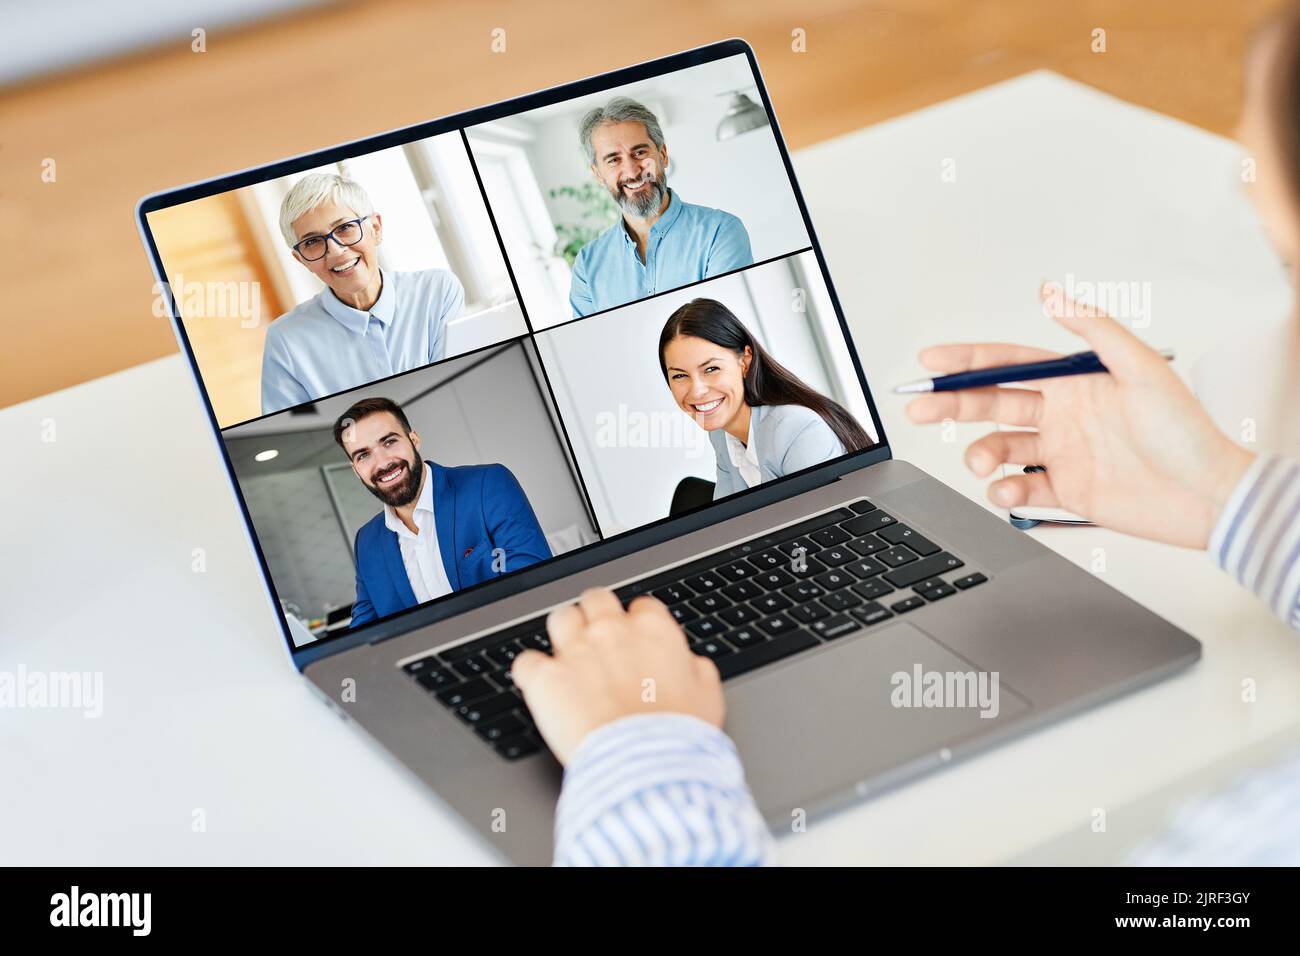 meeting online business comunicazione computer tecnologia video conferenza laptop chiamata team amico lavoro Foto Stock